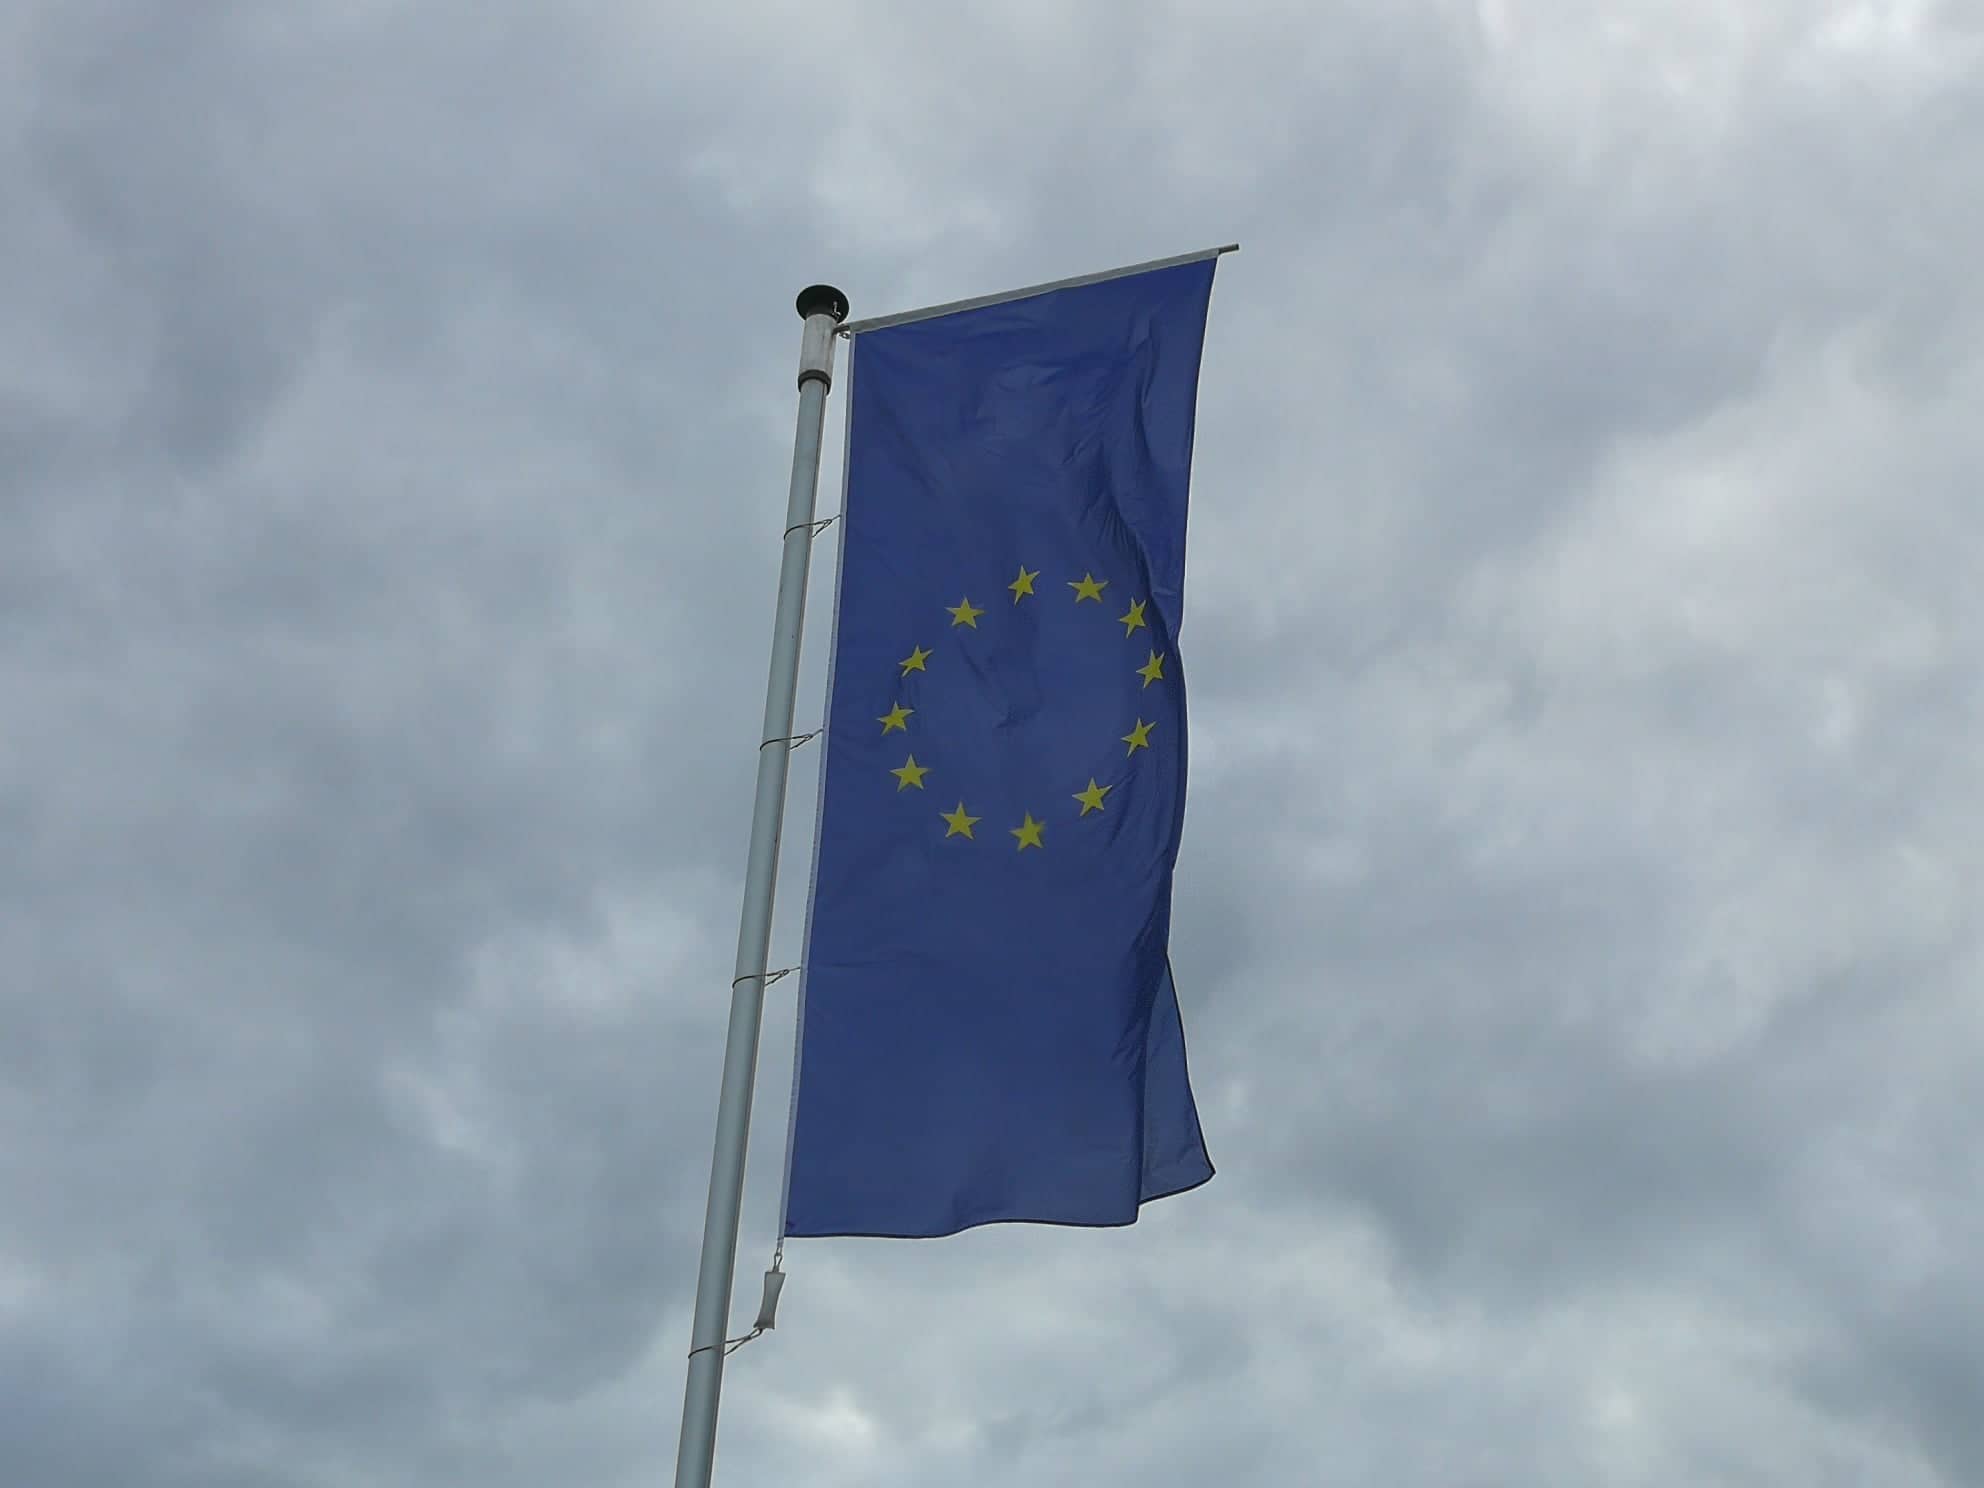 Ministri finansija EU postigli dogovor o paketu pomoći od 500 milijardi